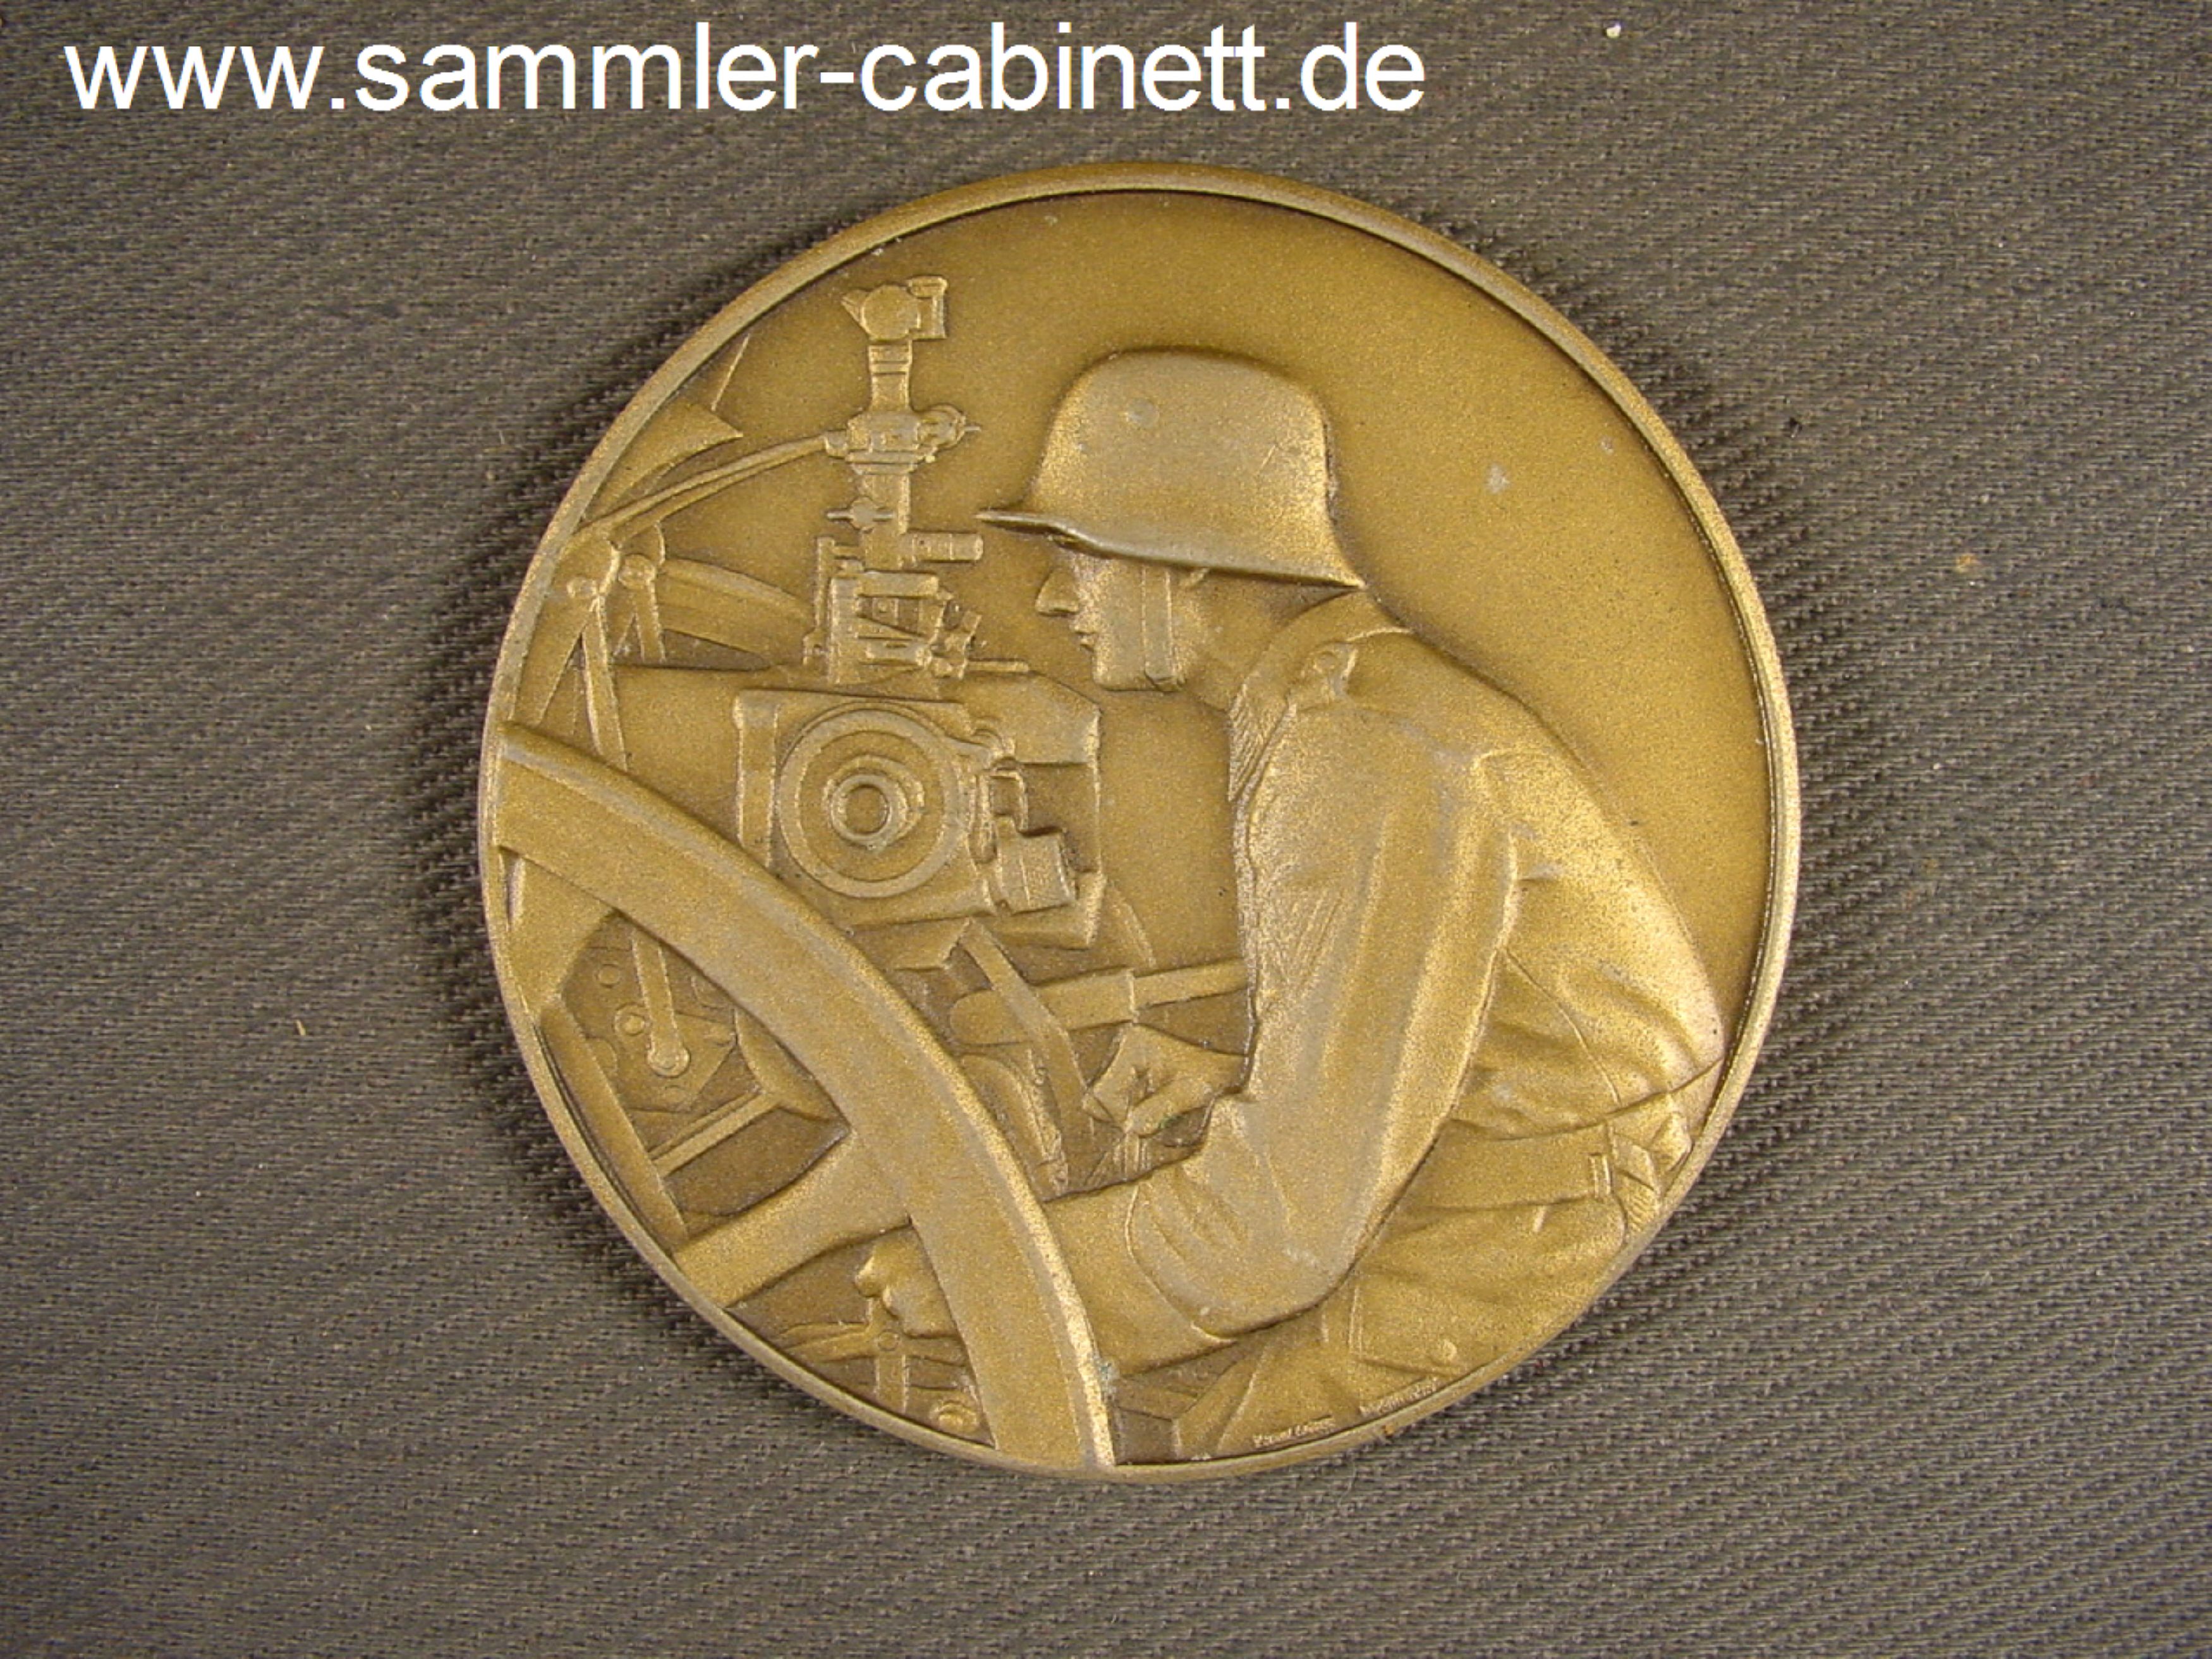 Medaille - PREISRICHTEN - 1939 - 3. Preis - Artl. Regt....